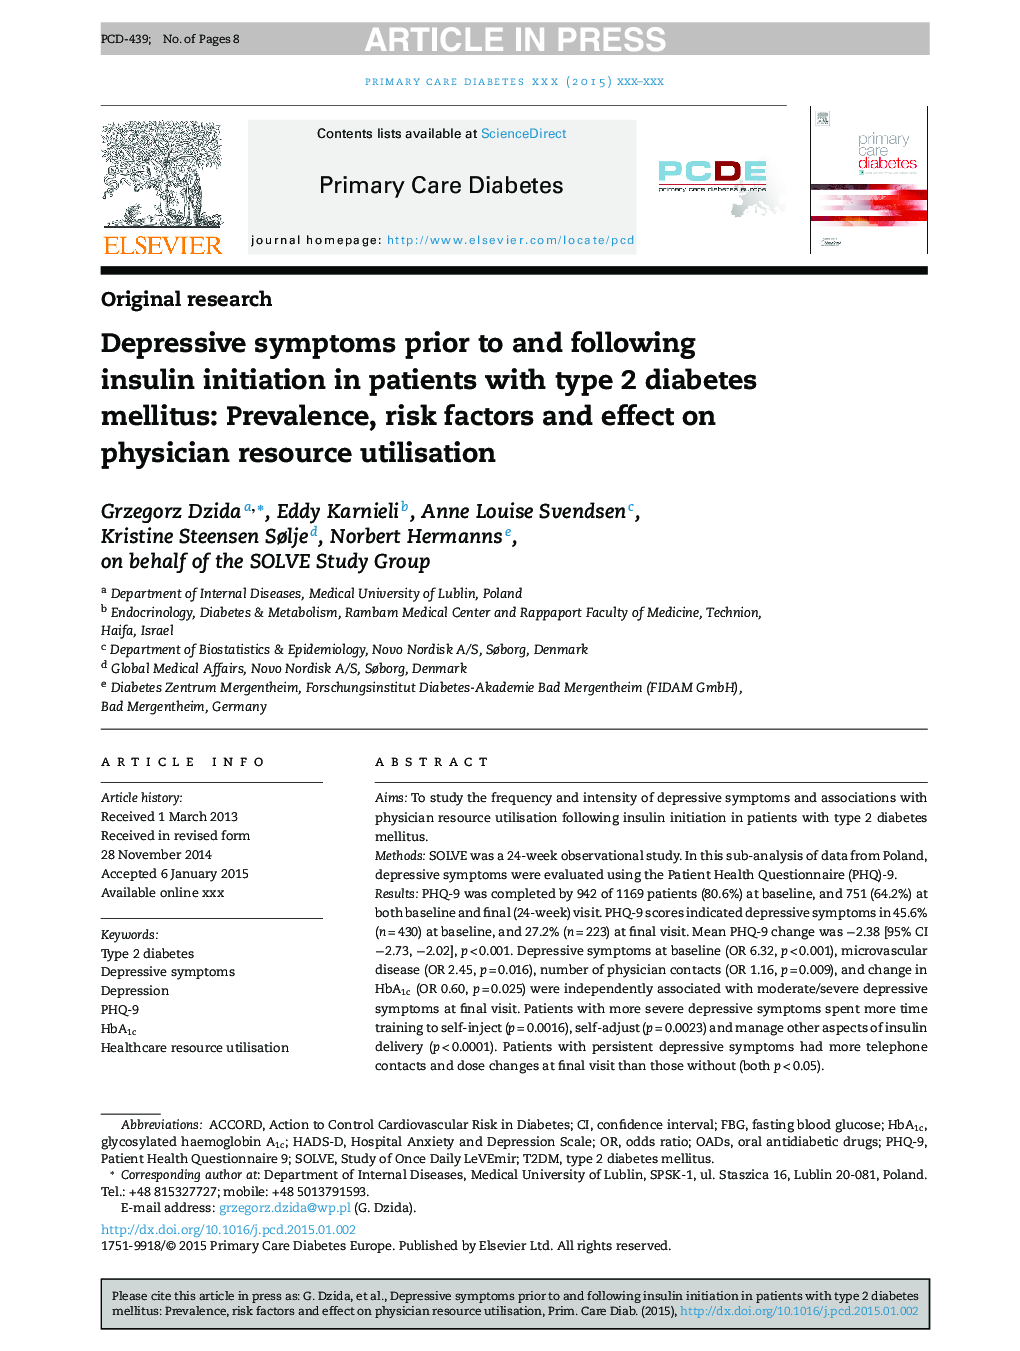 علائم افسردگی قبل و بعد از شروع انسولین در بیماران مبتلا به دیابت نوع 2: شیوع، عوامل خطر و تأثیر بر استفاده از منابع پزشک 